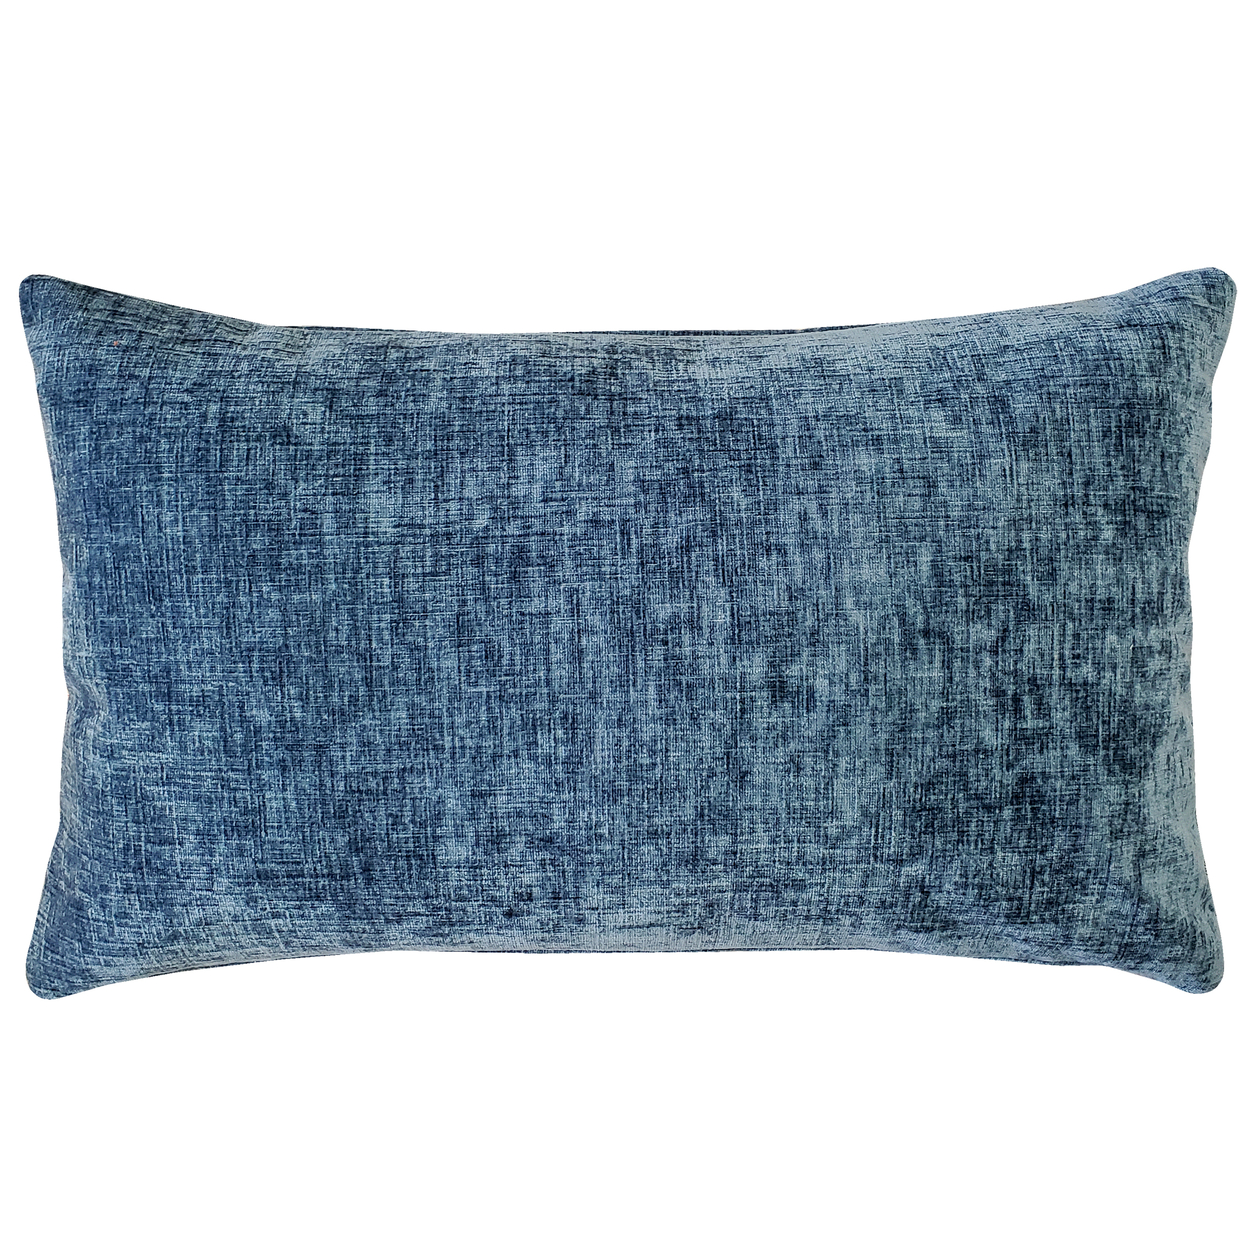 Venetian Velvet Agean Blue Throw Pillow 12x20, With Polyfill Insert